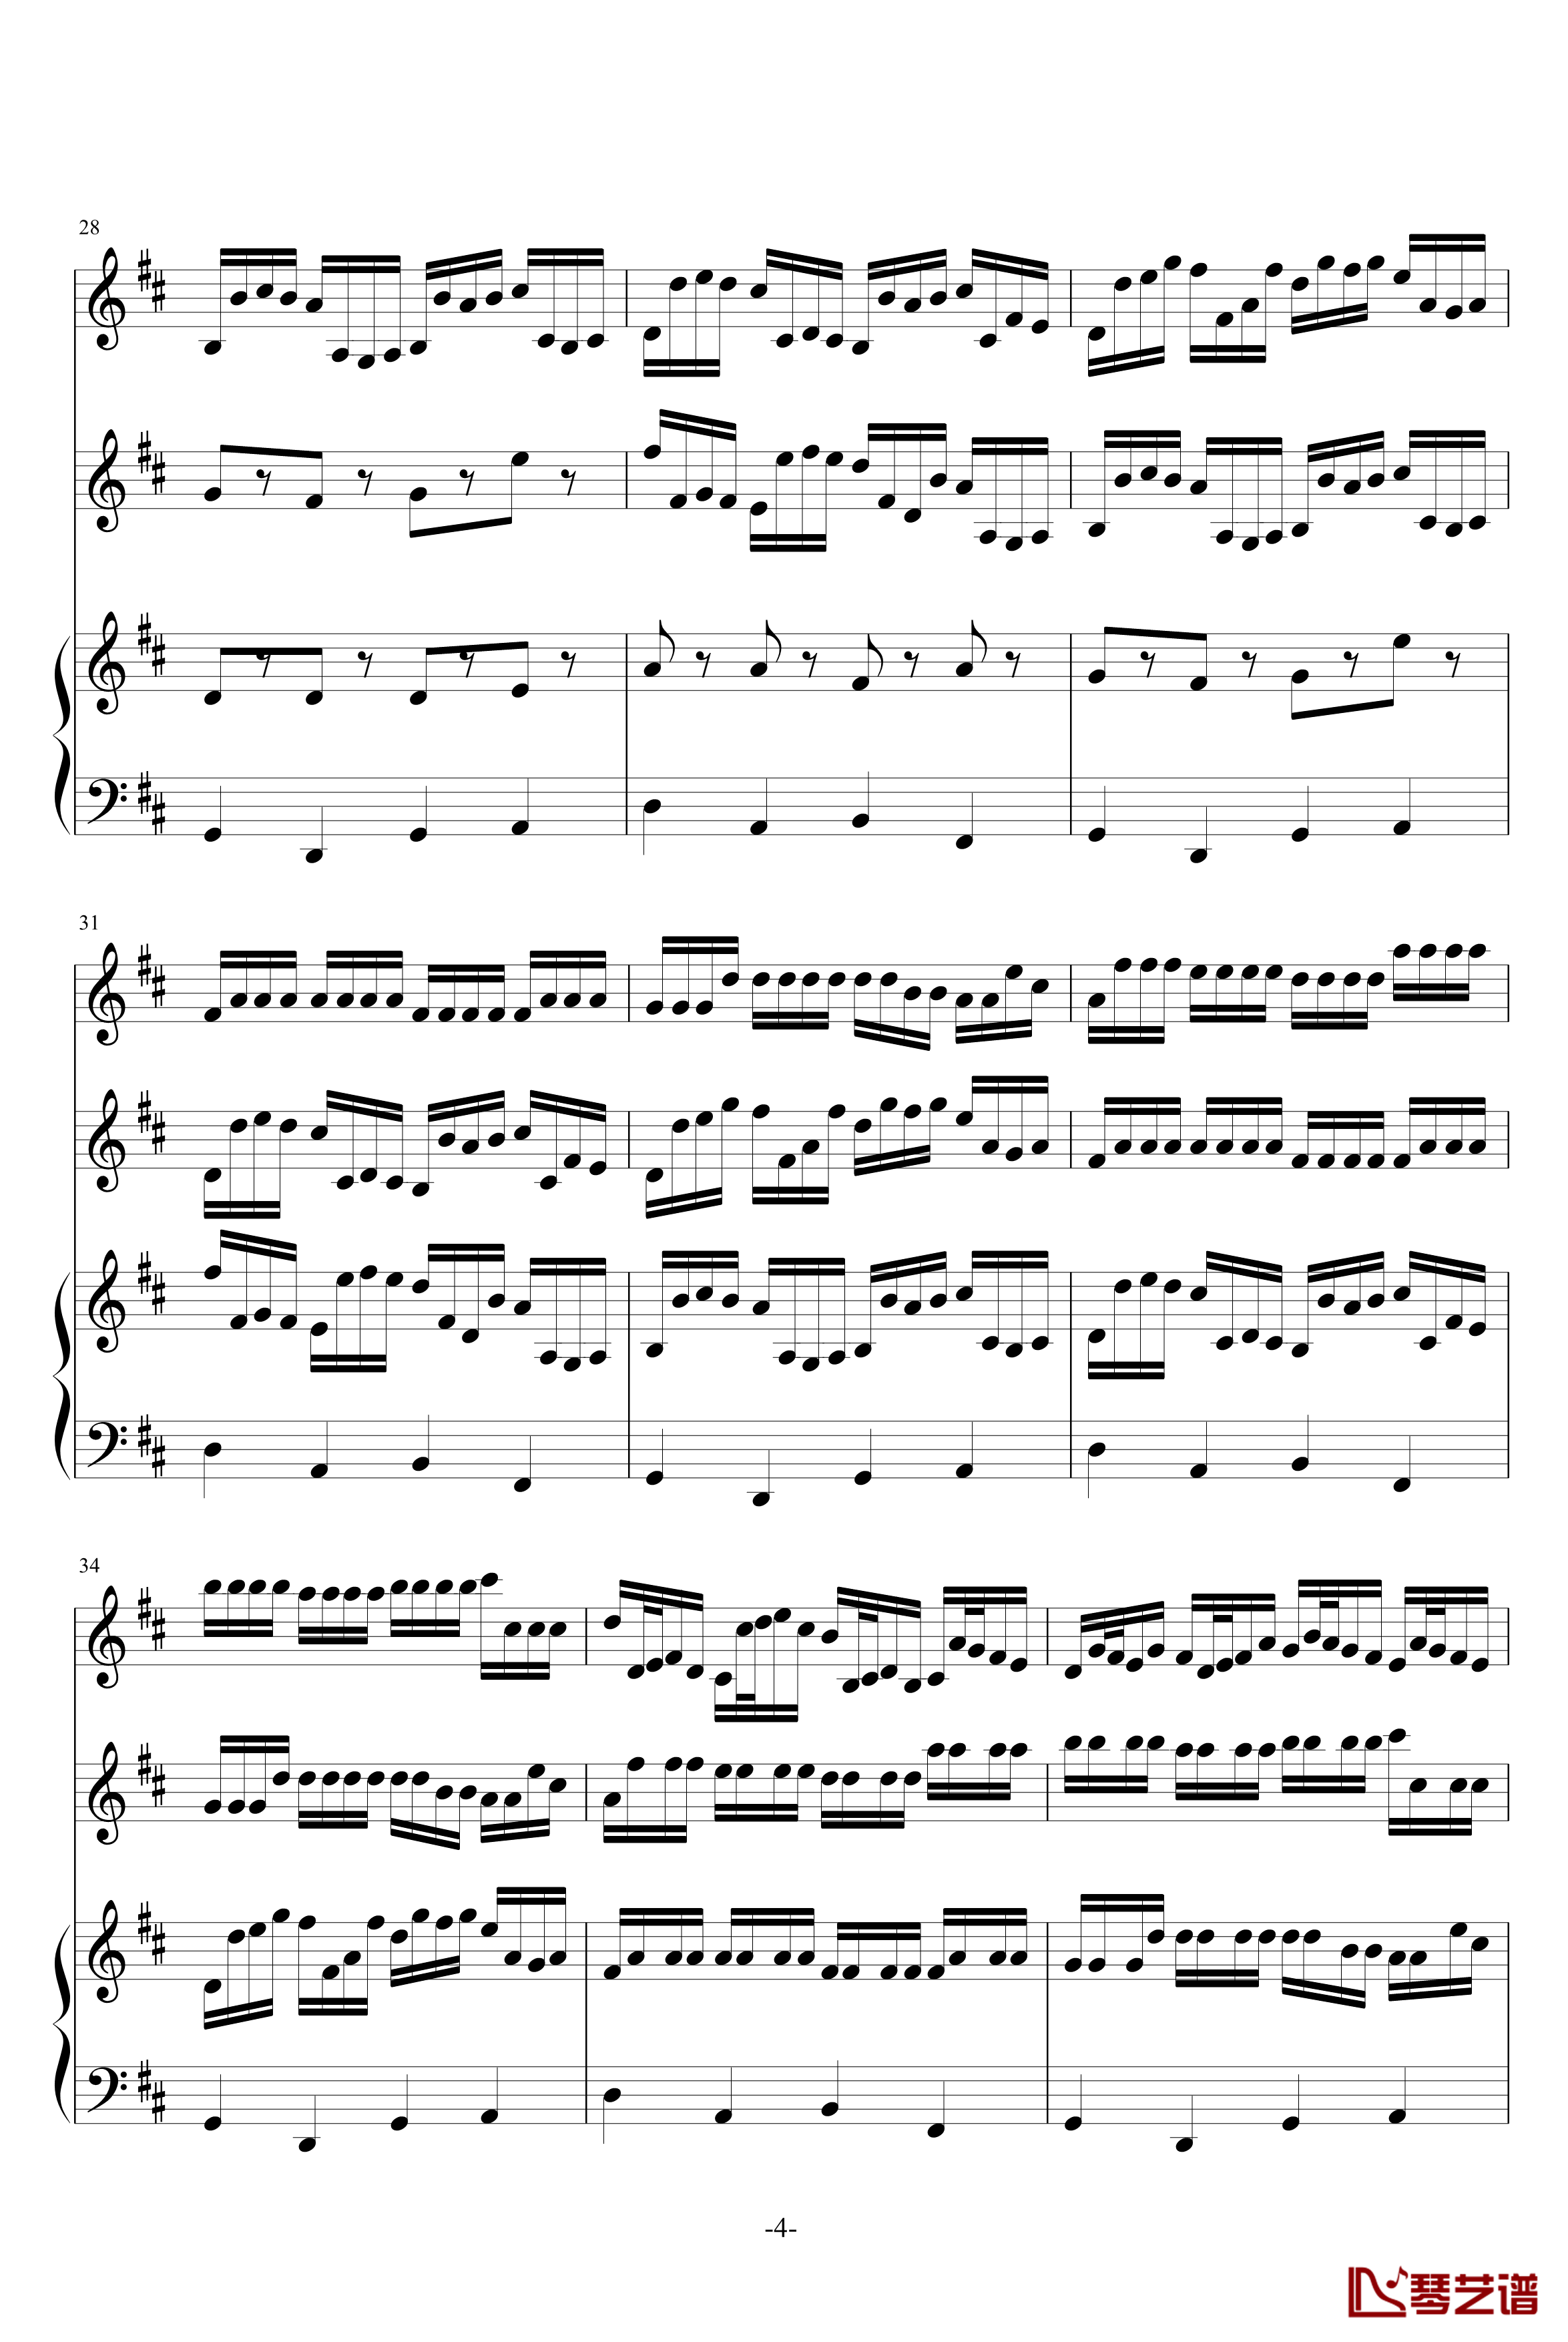 卡农原版钢琴谱-三小提琴-大提琴-帕赫贝尔-Pachelbel